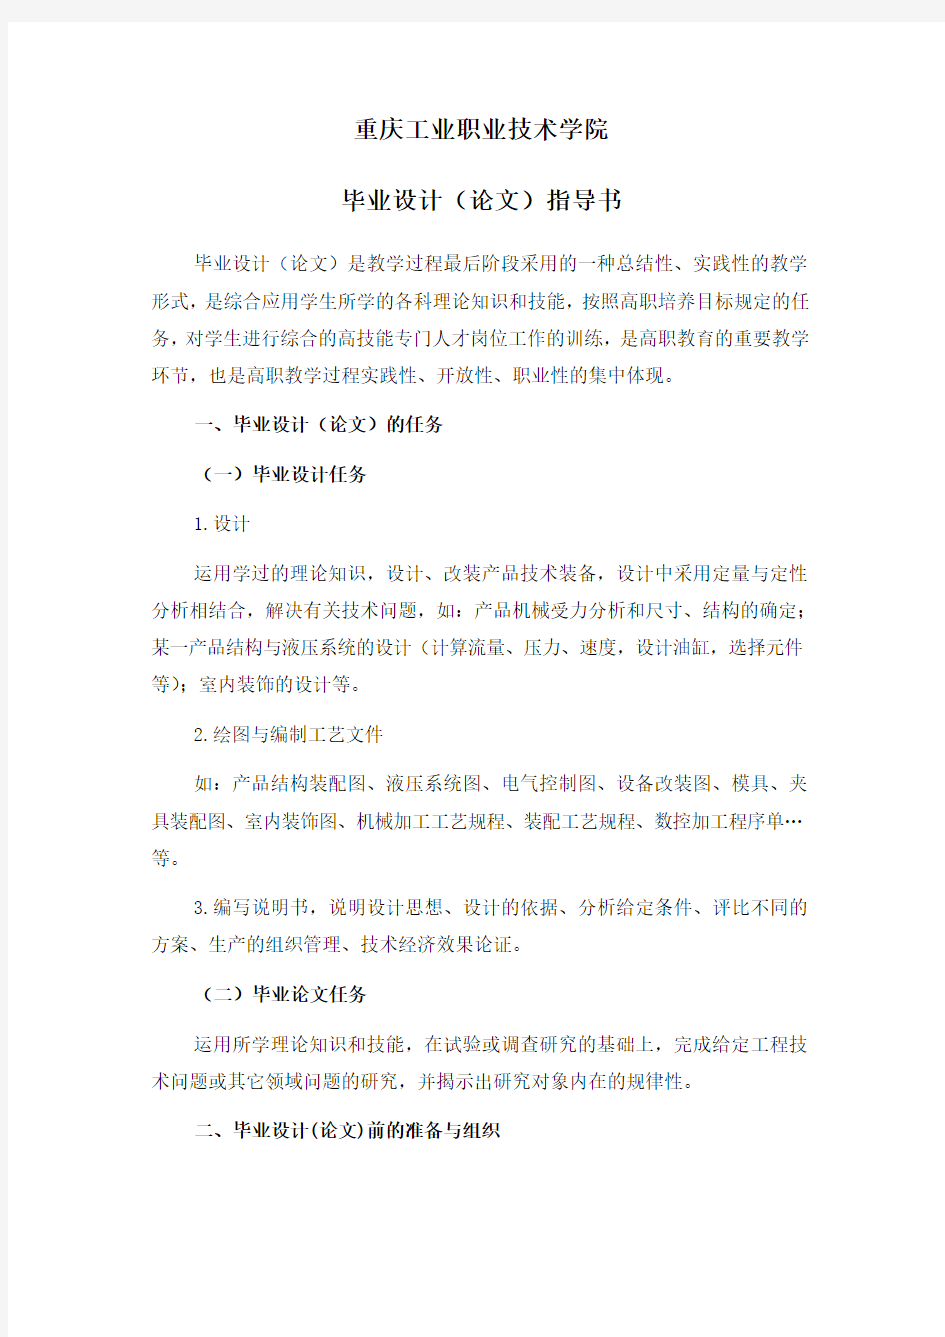 重庆工业职业技术学院毕业设计论文指导书